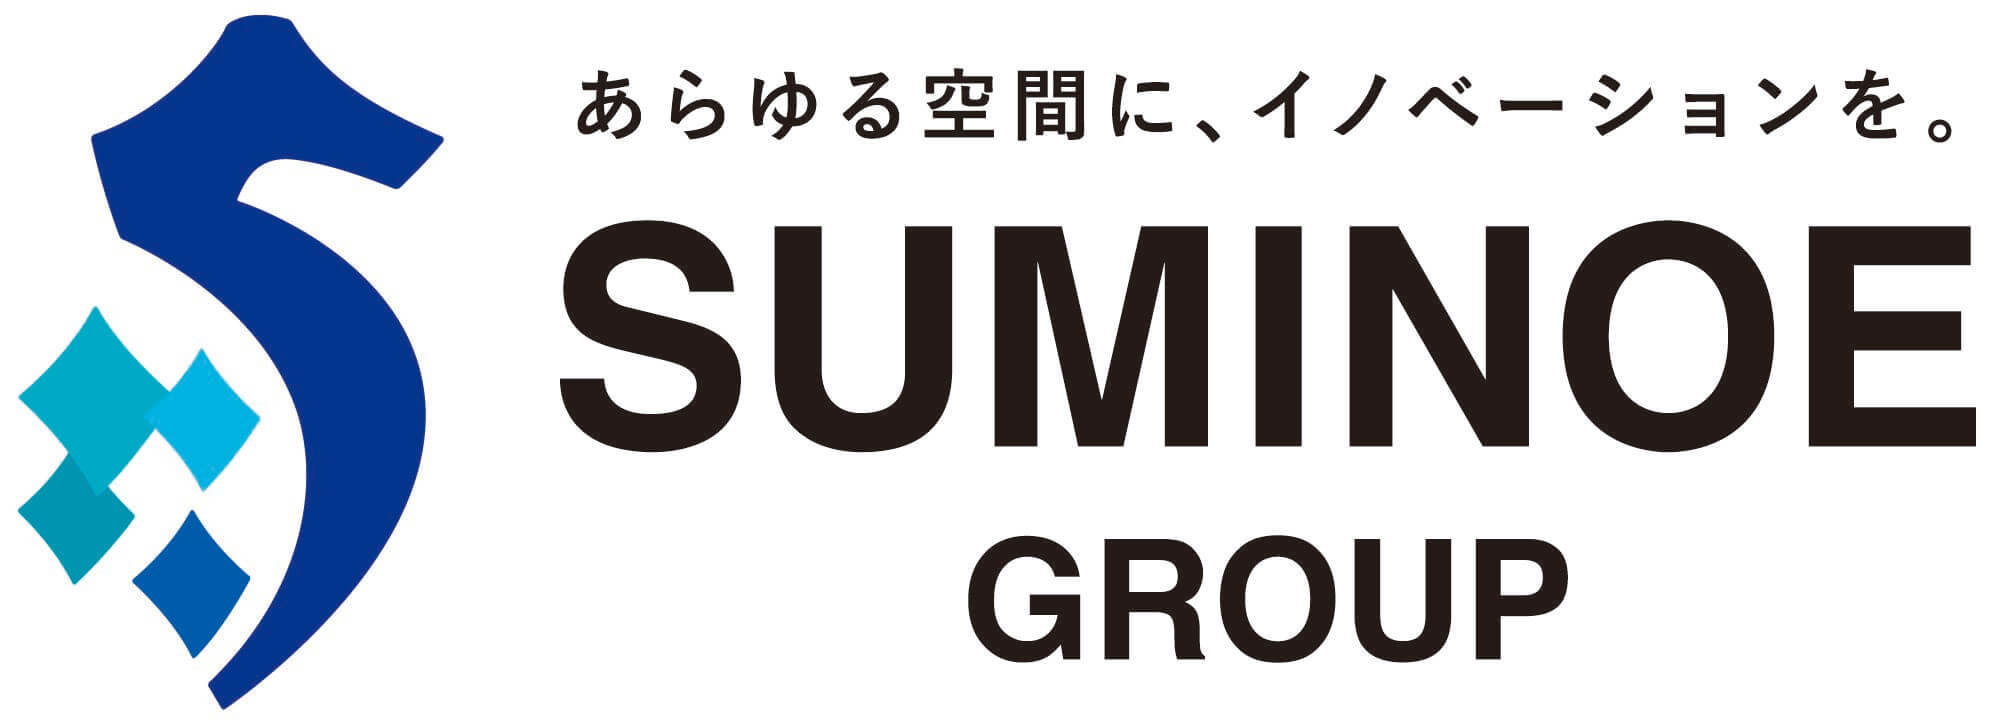 SUMINOE GROUP統一ロゴ